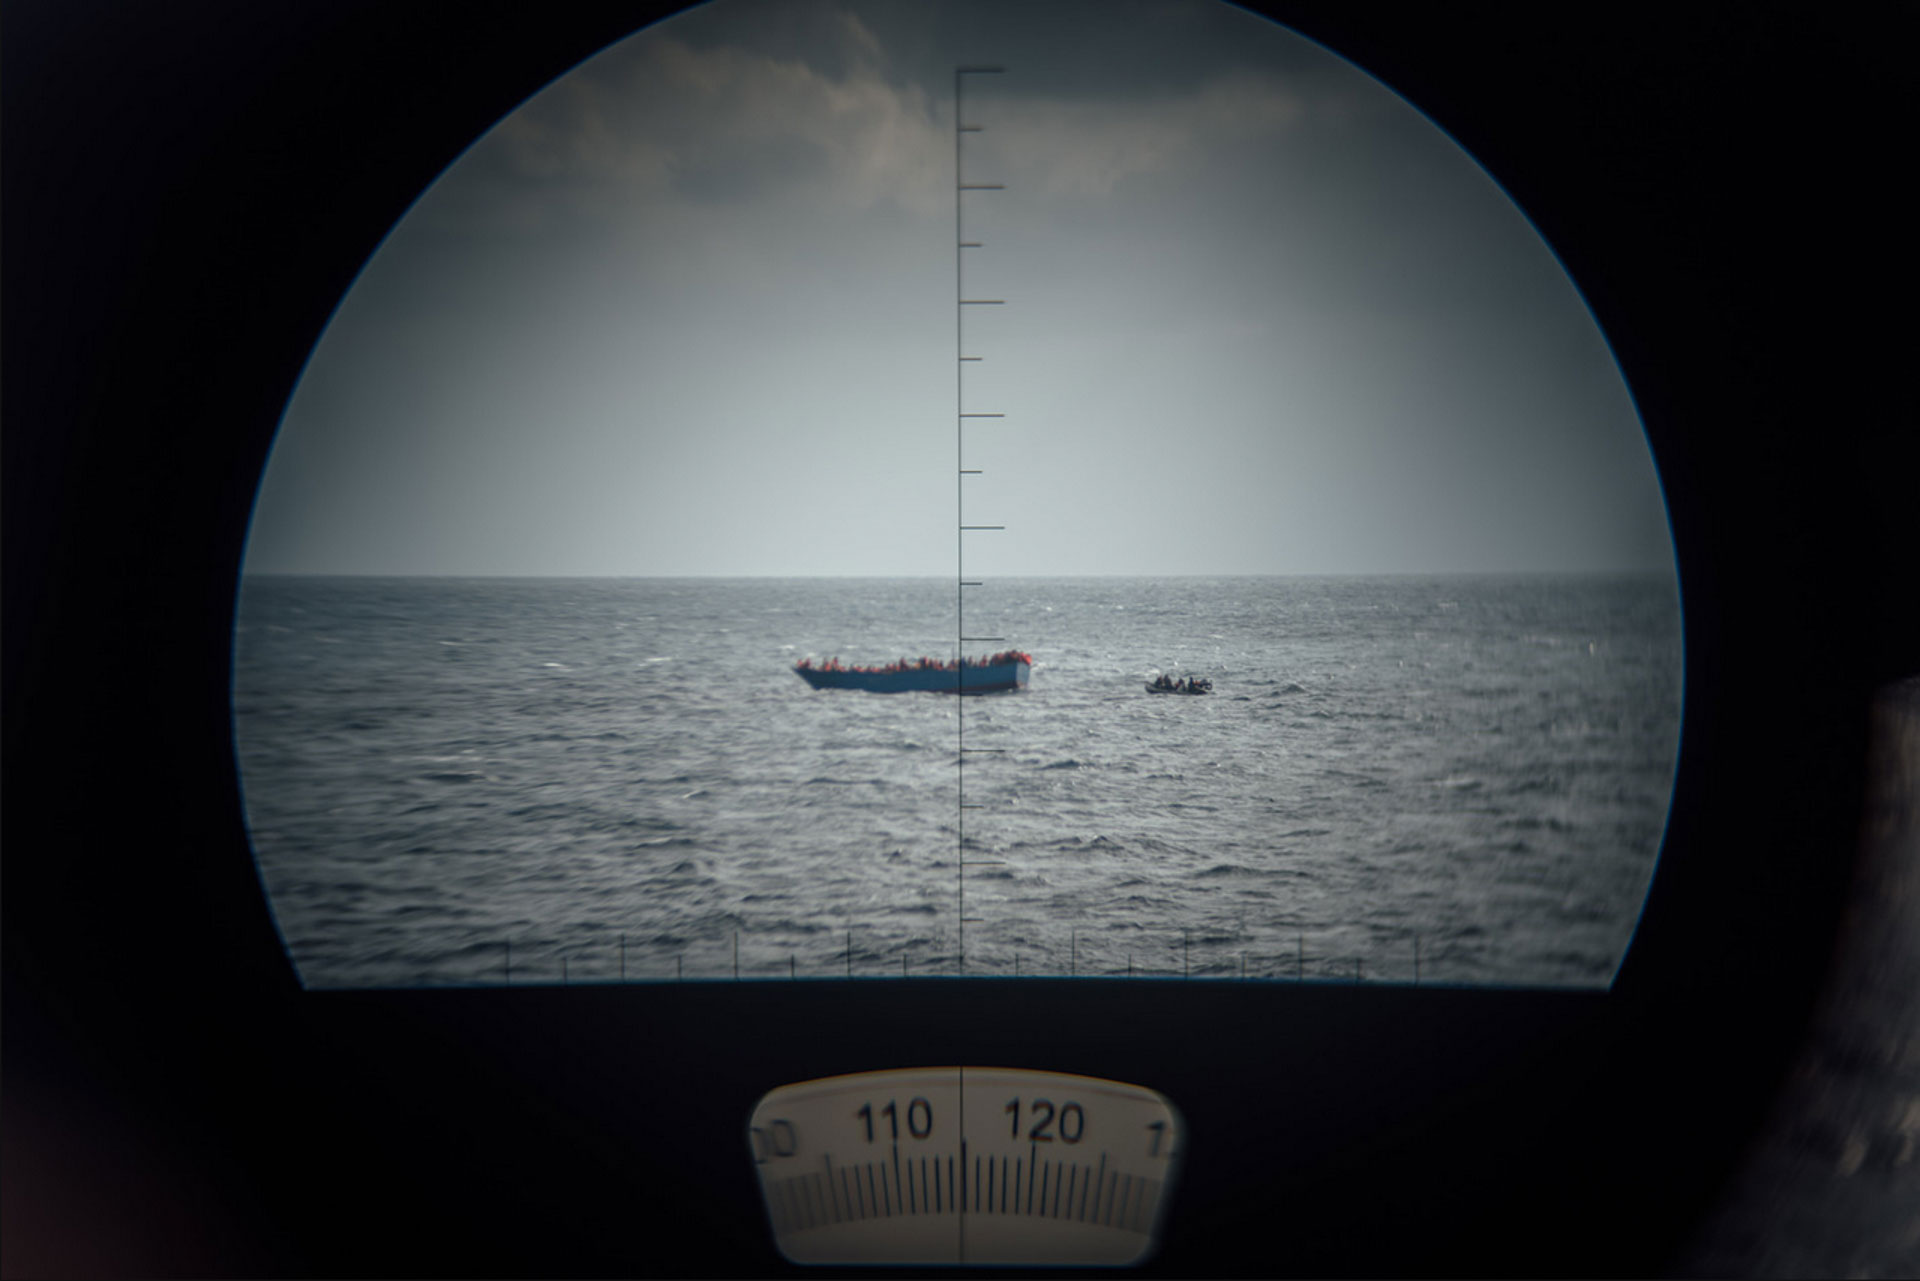 Mediterranean Rescue, Rettungseinsatz der MS Aquarius vor der Küste Libyens im stürmischen Mittelmeer. Die Rettung wird durch ein Fernglas beobachtet. Jeder 41. Flüchtling stirbt bei Überfahrt in Richtung Europa, 12.2016, Mittelmeer zwischen Italien und Libyen. © Kevin McElvaney